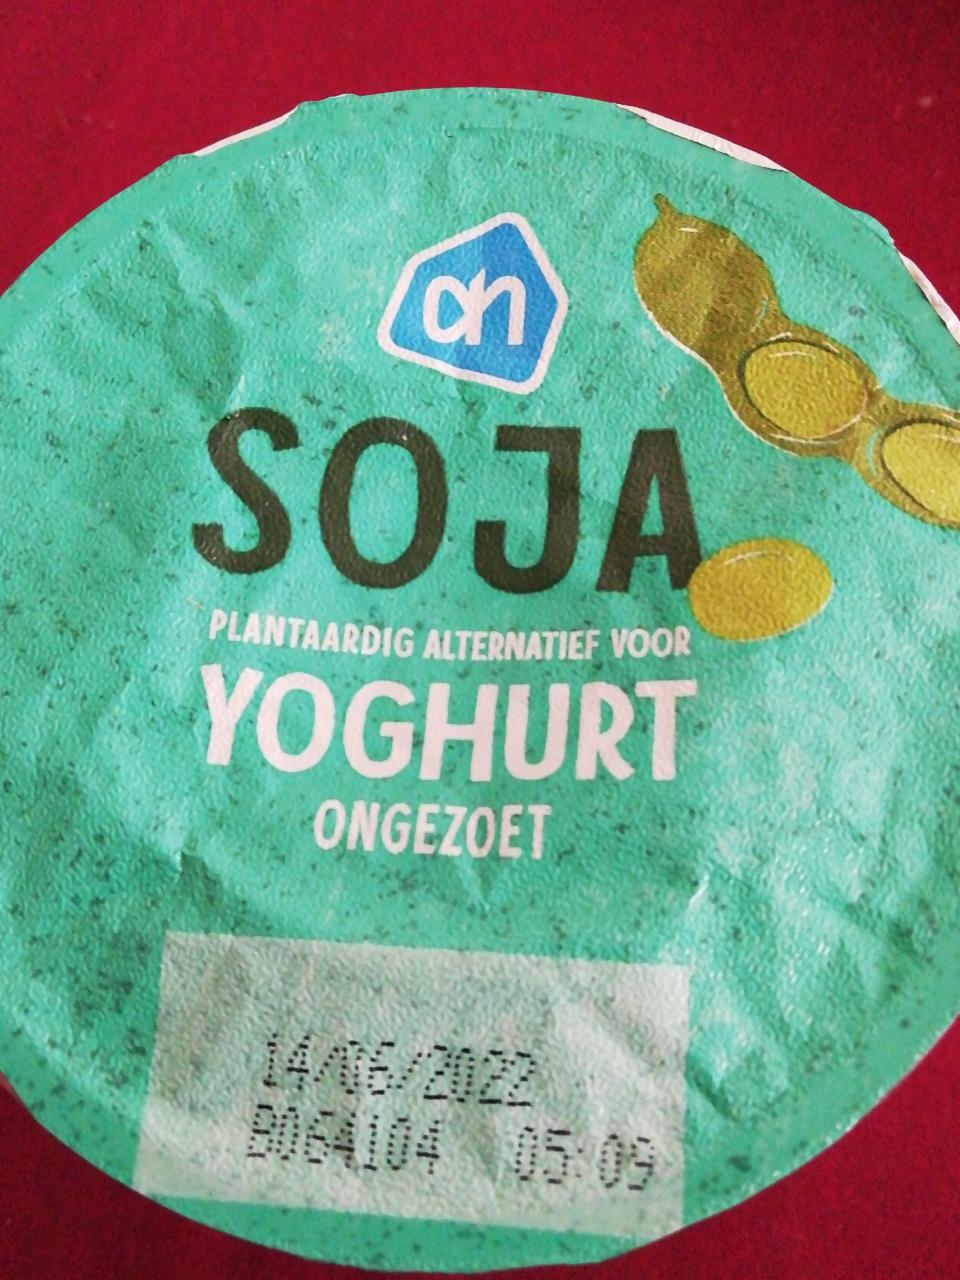 Fotografie - Soja yoghurt ongezoet Albert Heijn